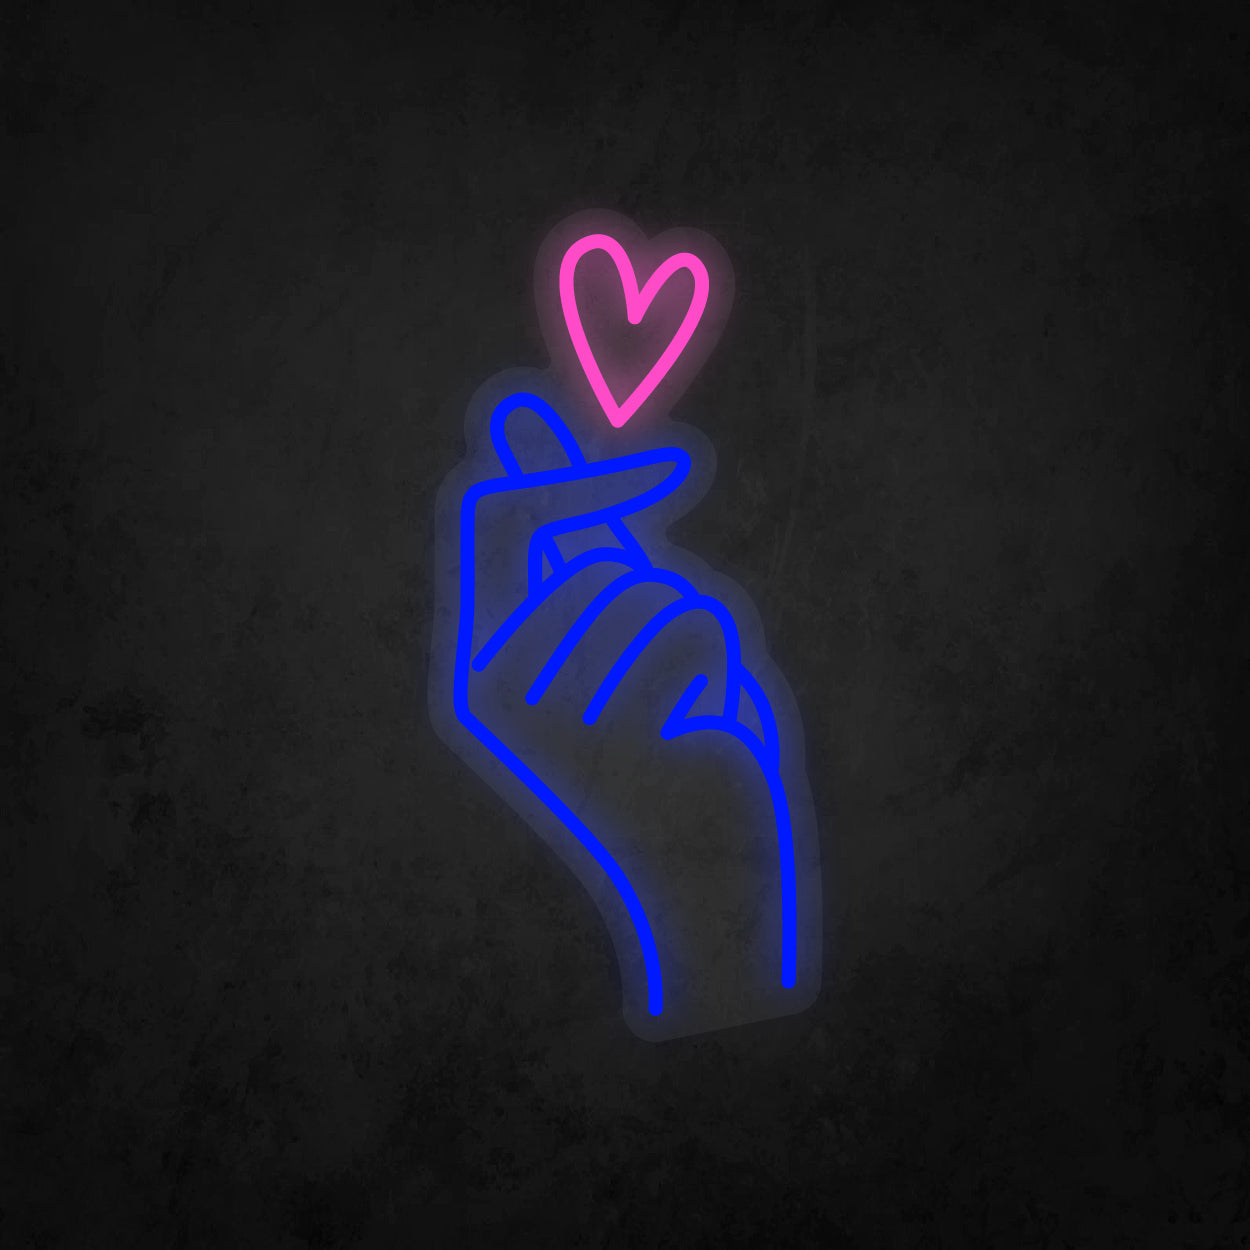 LED Neon Sign - Finger Heart Small